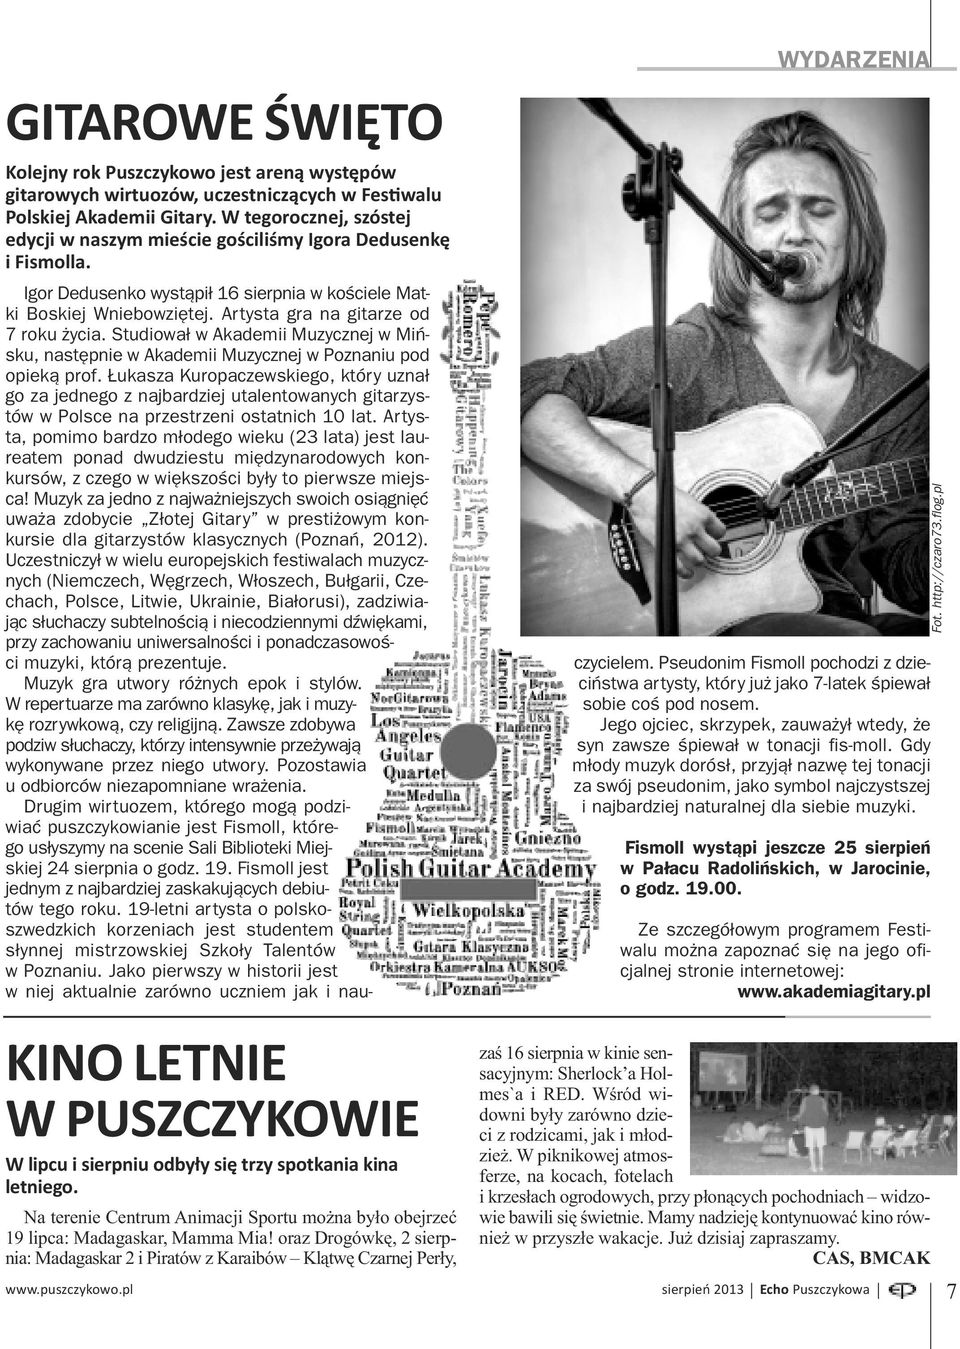 Artysta gra na gitarze od 7 roku życia. Studiował w Akademii Muzycznej w Mińsku, następnie w Akademii Muzycznej w Poznaniu pod opieką prof.